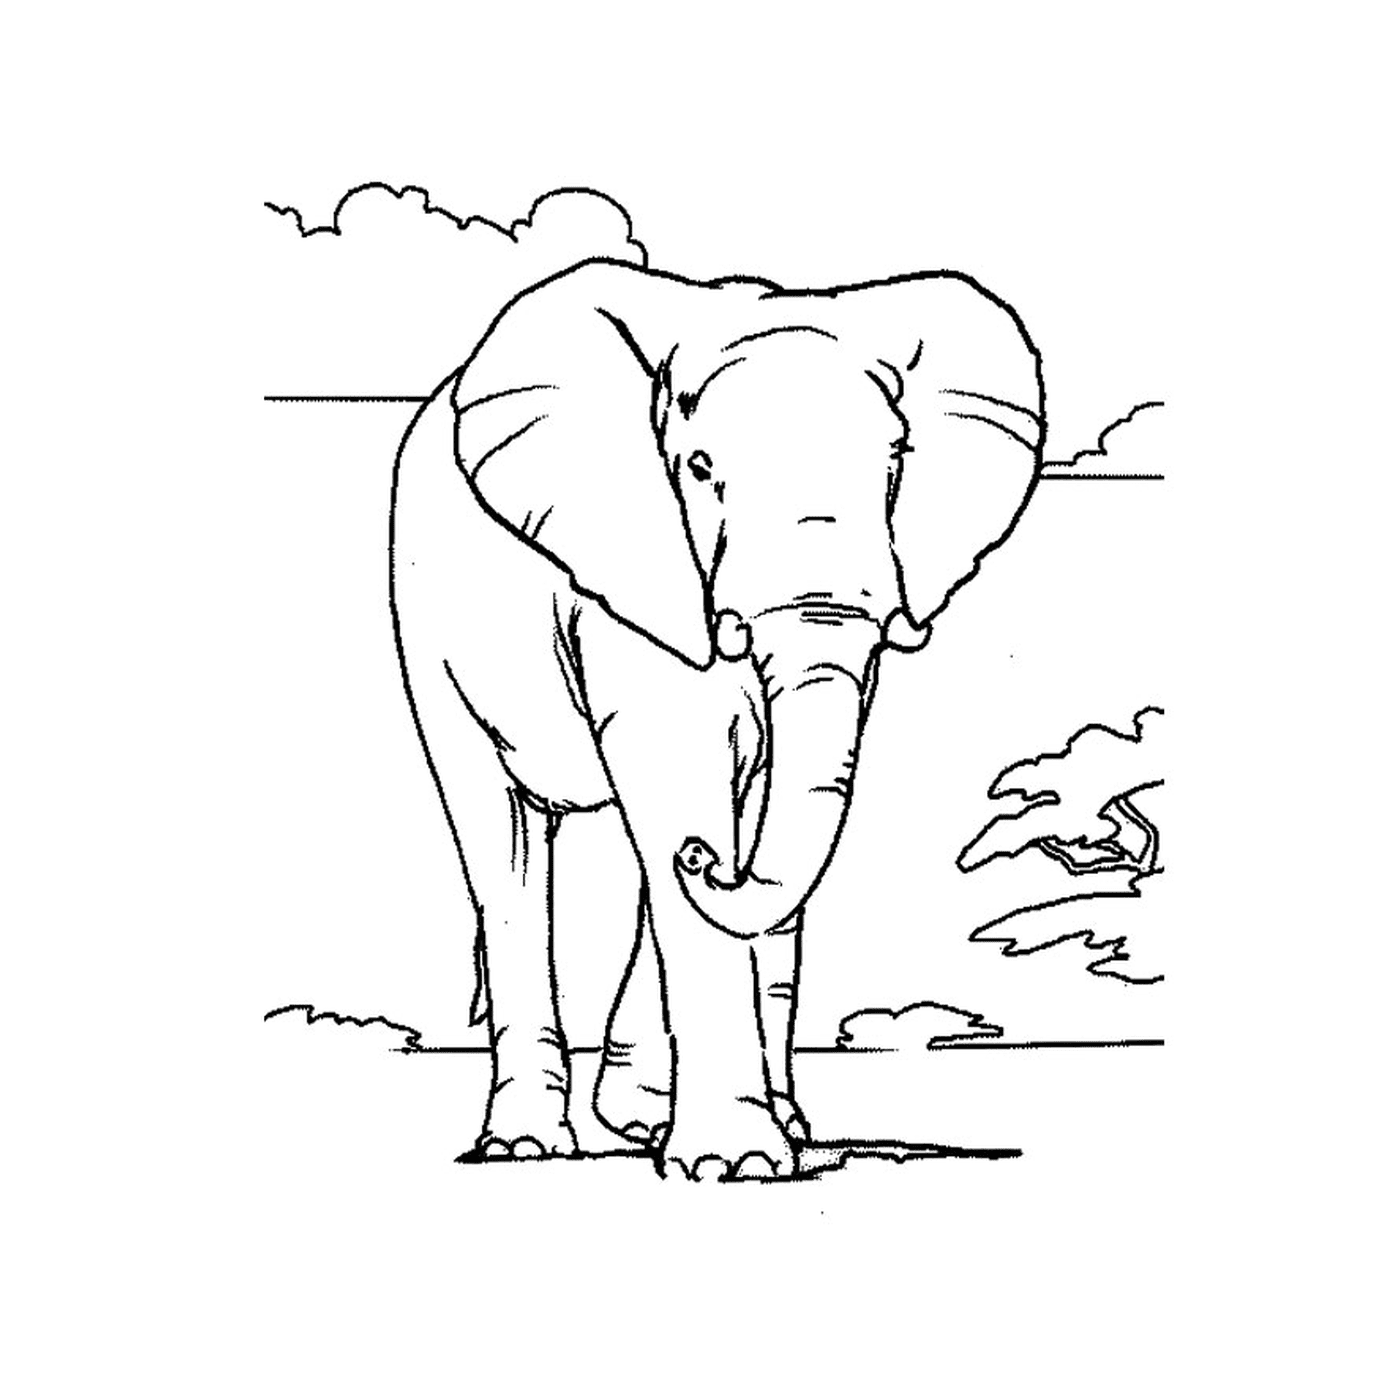  一只大象站在天空前 满天云彩 